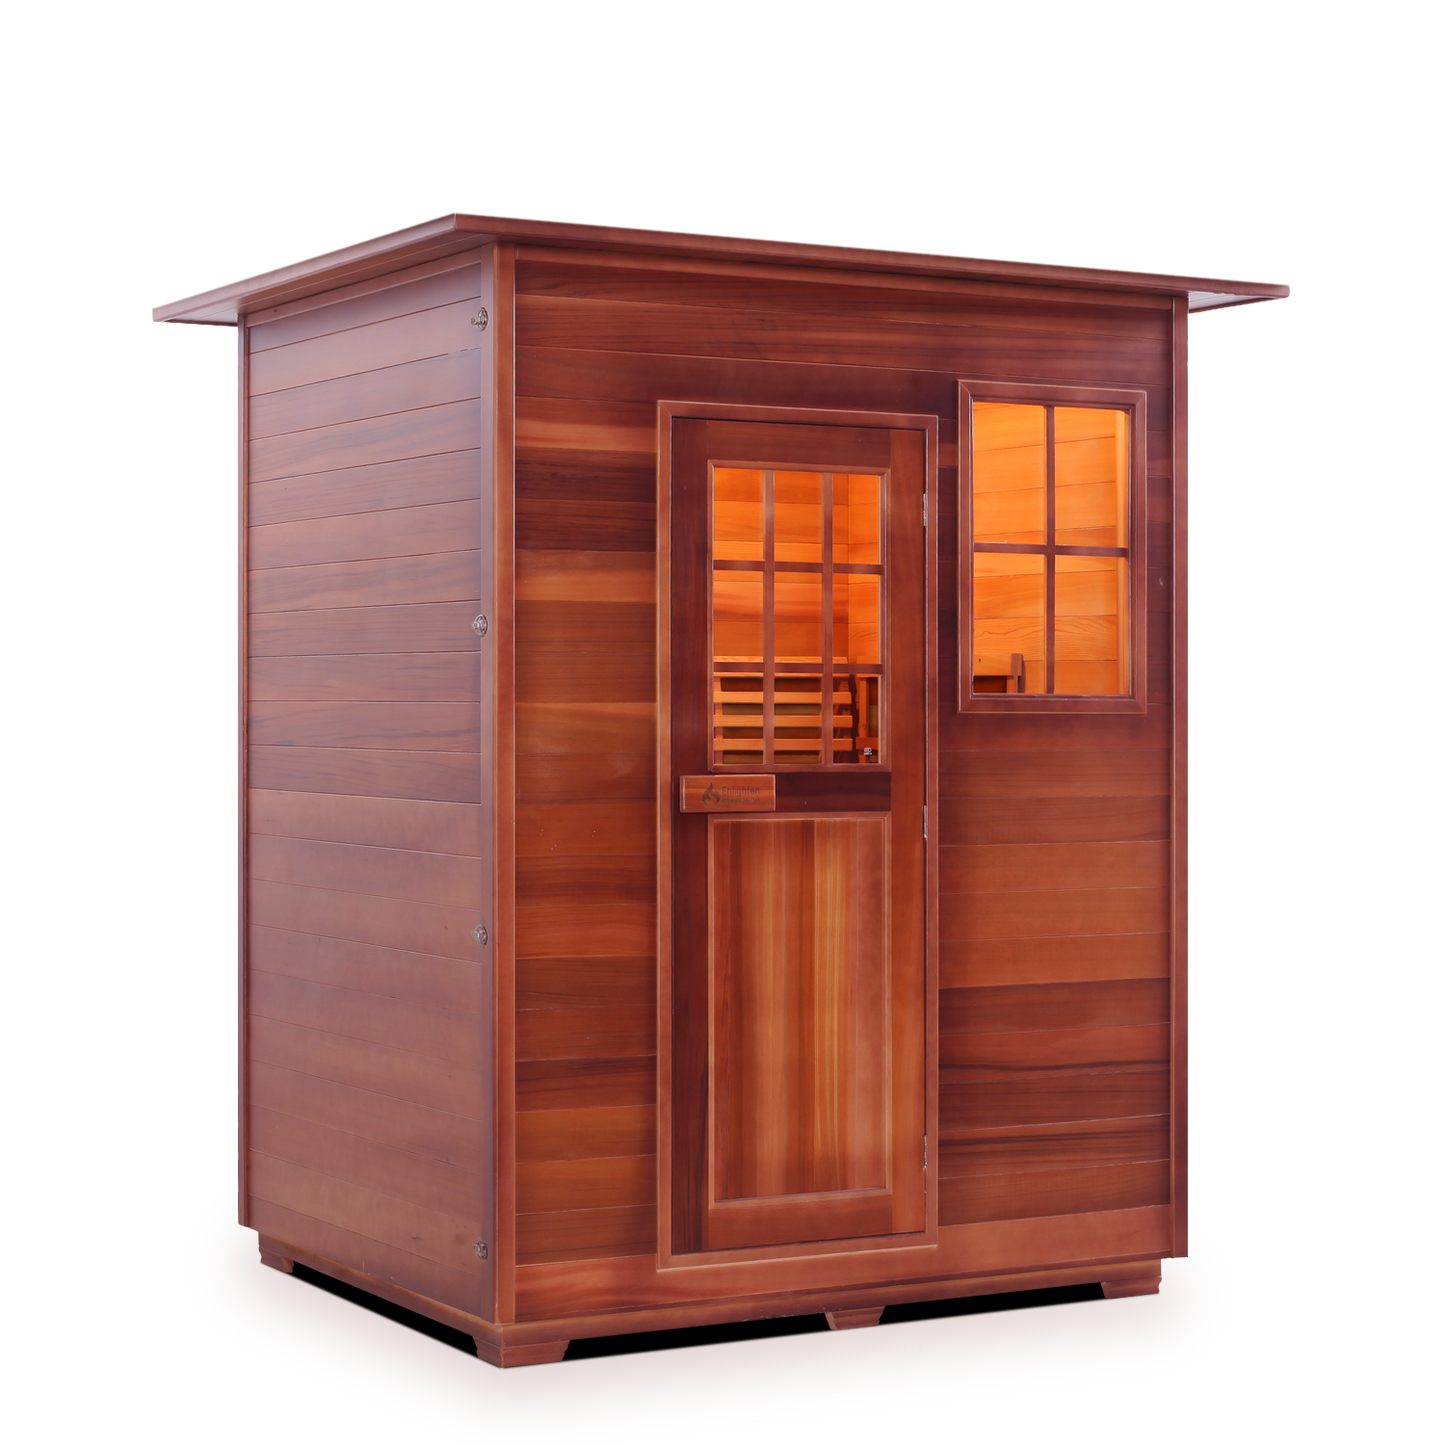 Enlighten MoonLight 3 - 3 Persons  Indoor Dry Traditional Sauna